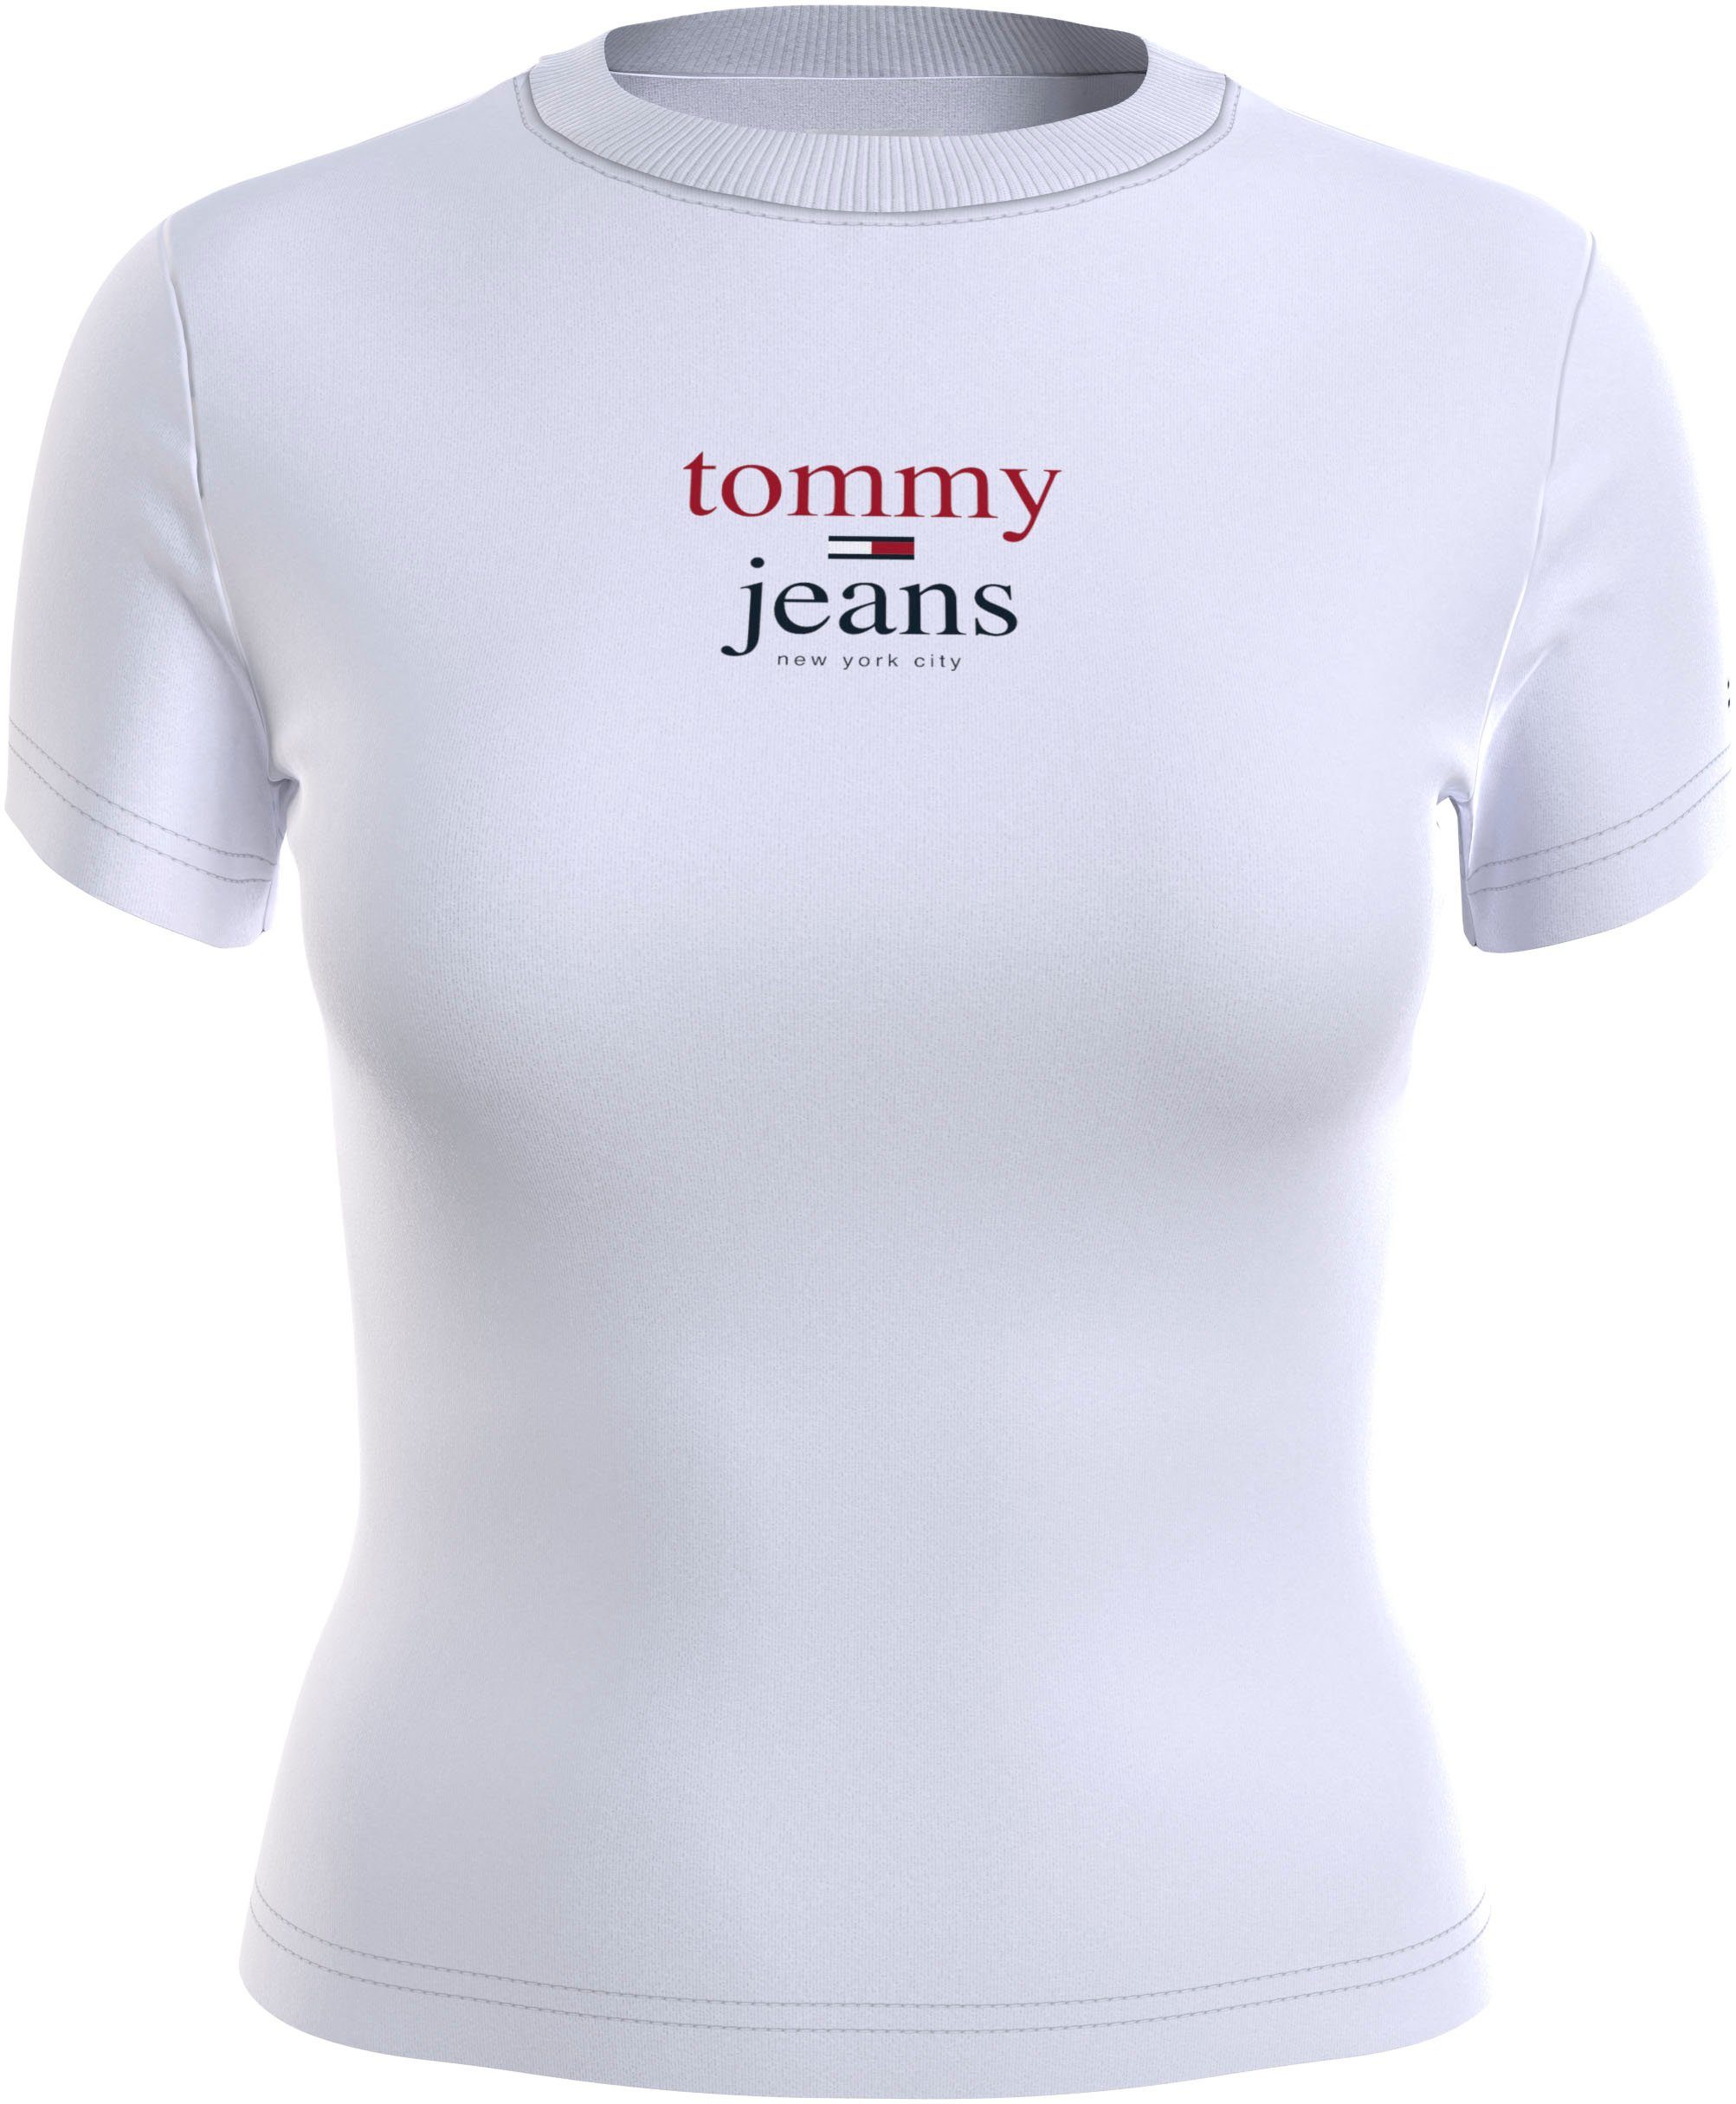 Lieferung zu einem supergünstigen Preis! Tommy Jeans Kurzarmshirt TJW LOGO 2 mit White im Tommy BABY Basic-Style SS Schriftzug ESSENTIAL Jeans